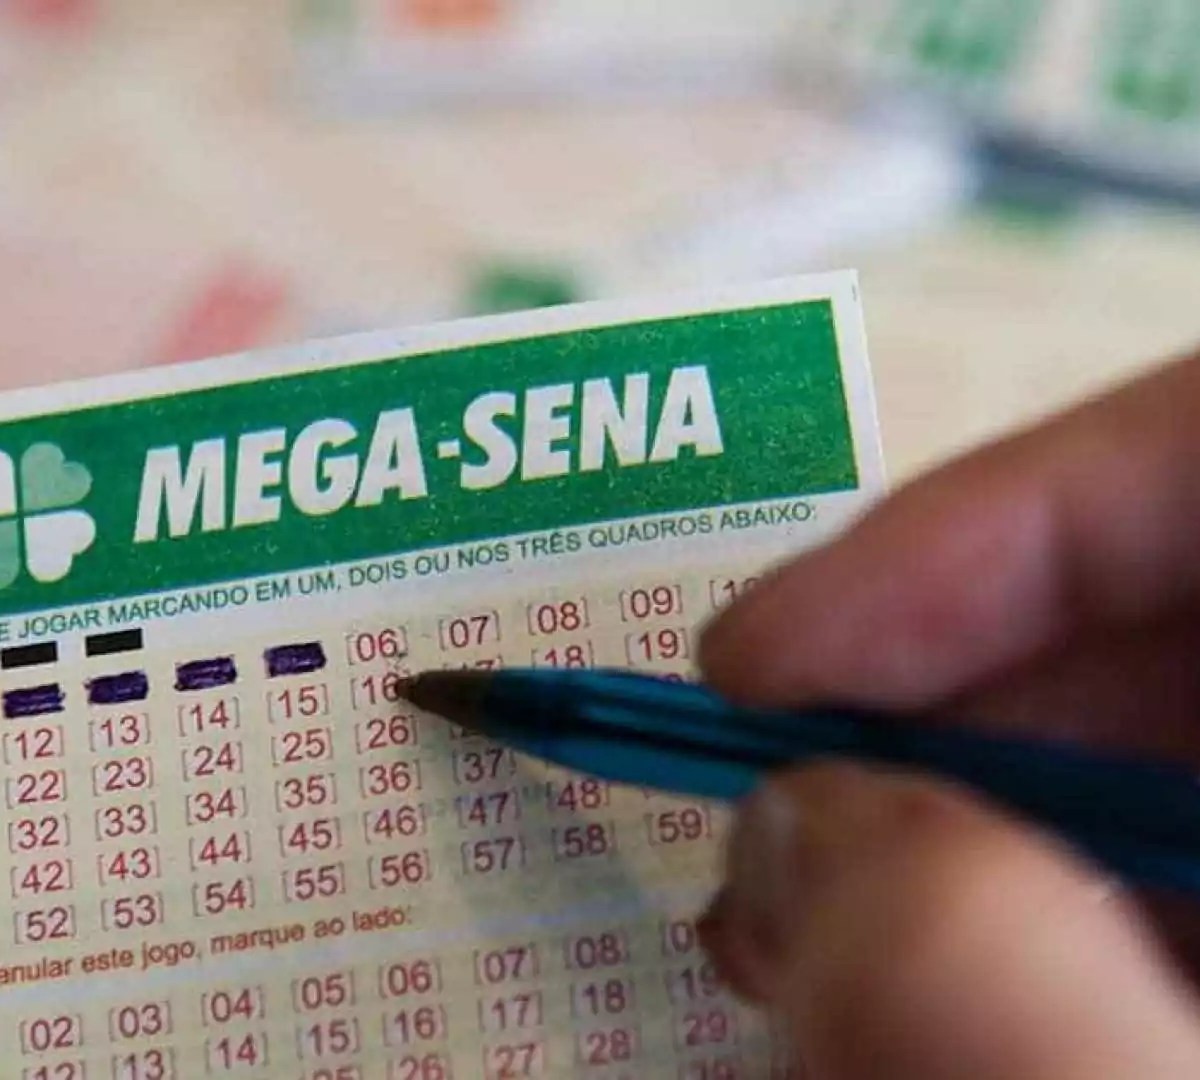 Mega da Virada e outras loterias: saiba como apostar pela internet, Loterias